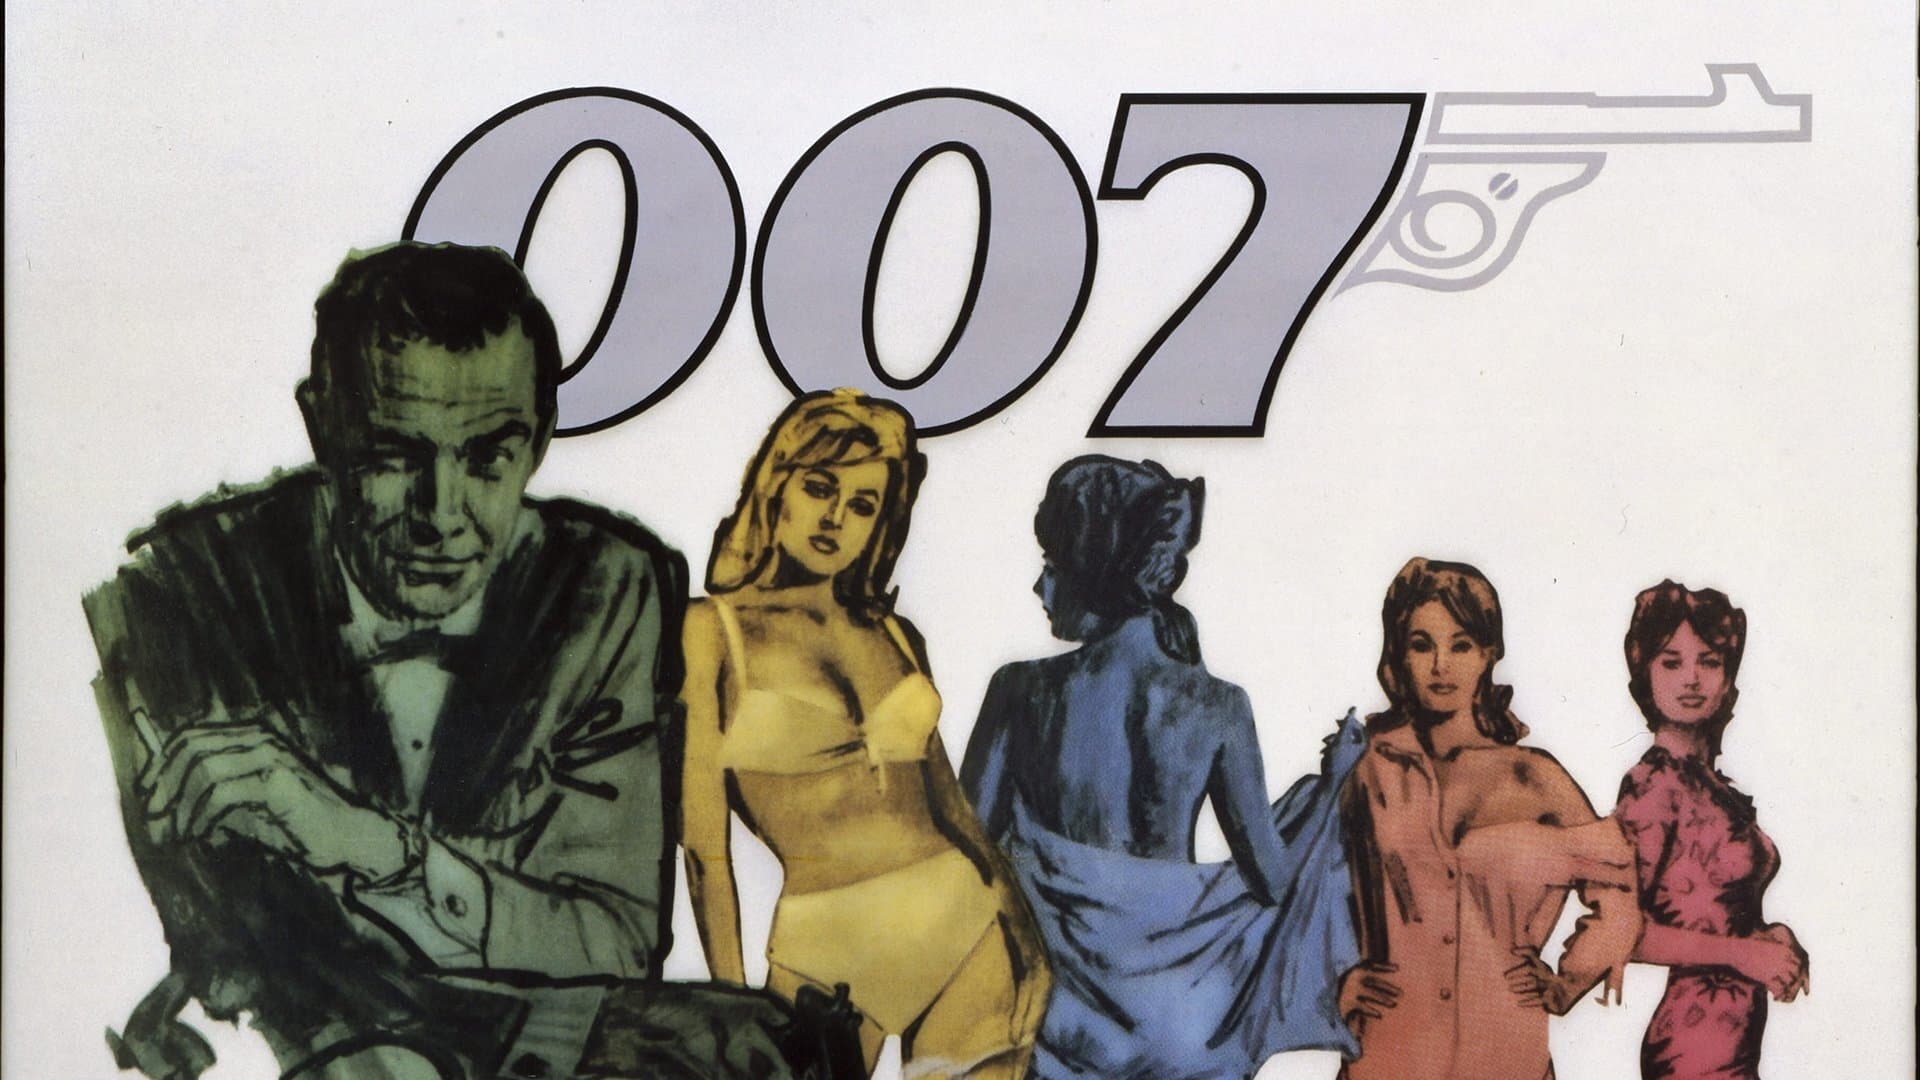 เจมส์ บอนด์ 007 ภาค 1: พยัคฆ์ร้าย 007